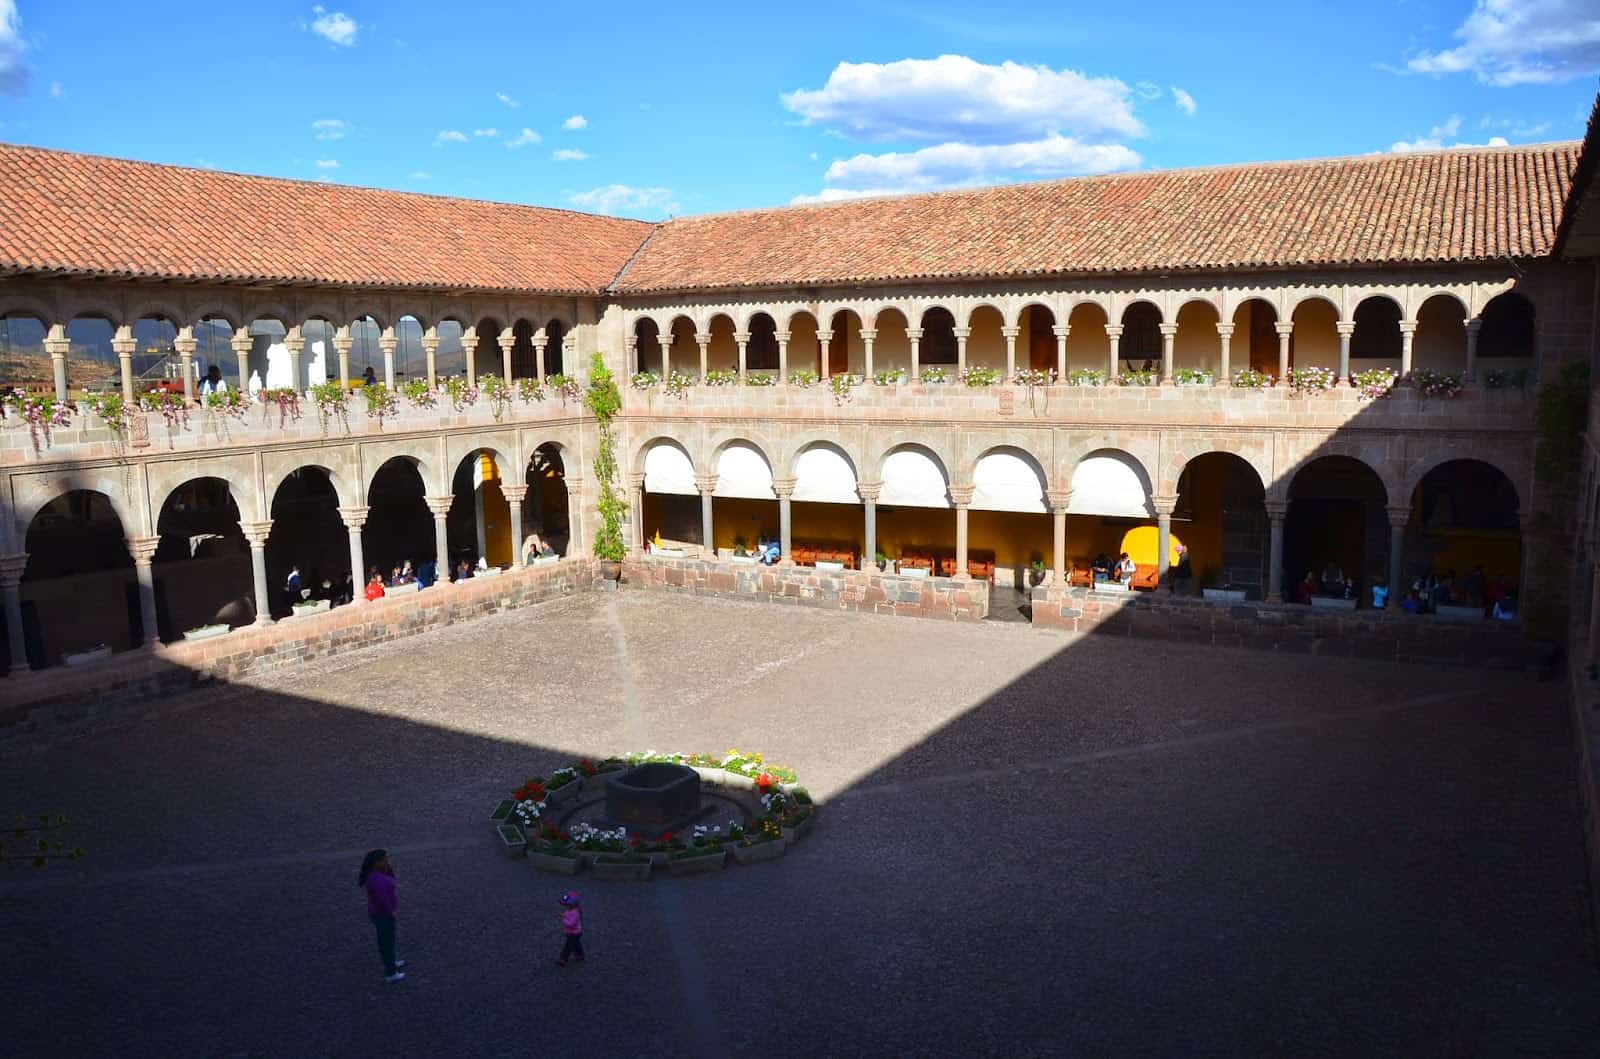 Courtyard of Convento de Santo Domingo in Cusco, Peru